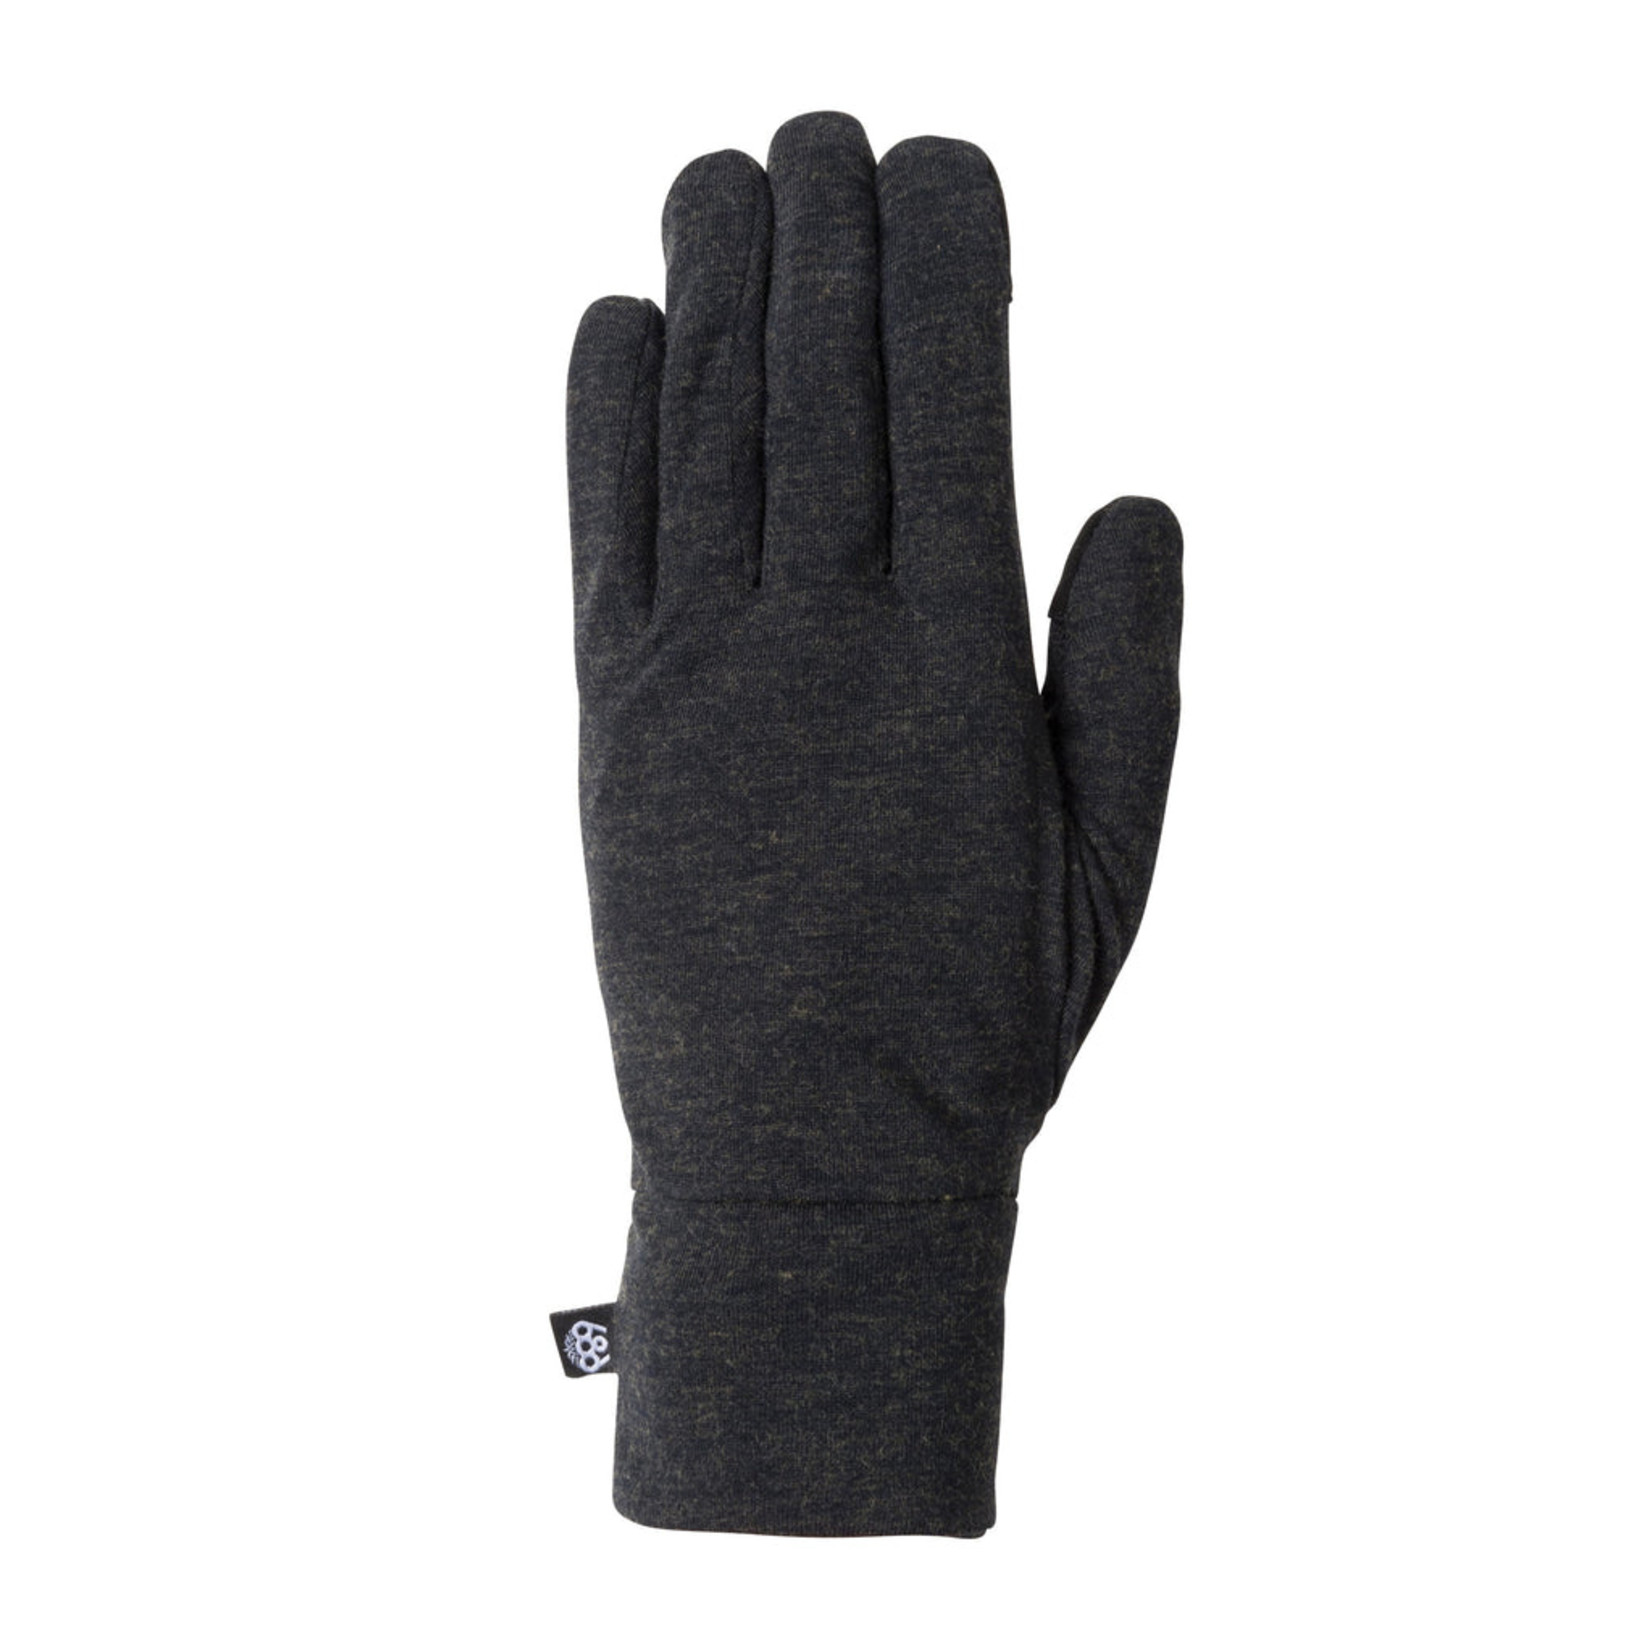 686 686 Men's Gore-Tex Smarty 3-In-1 Gauntlet Glove